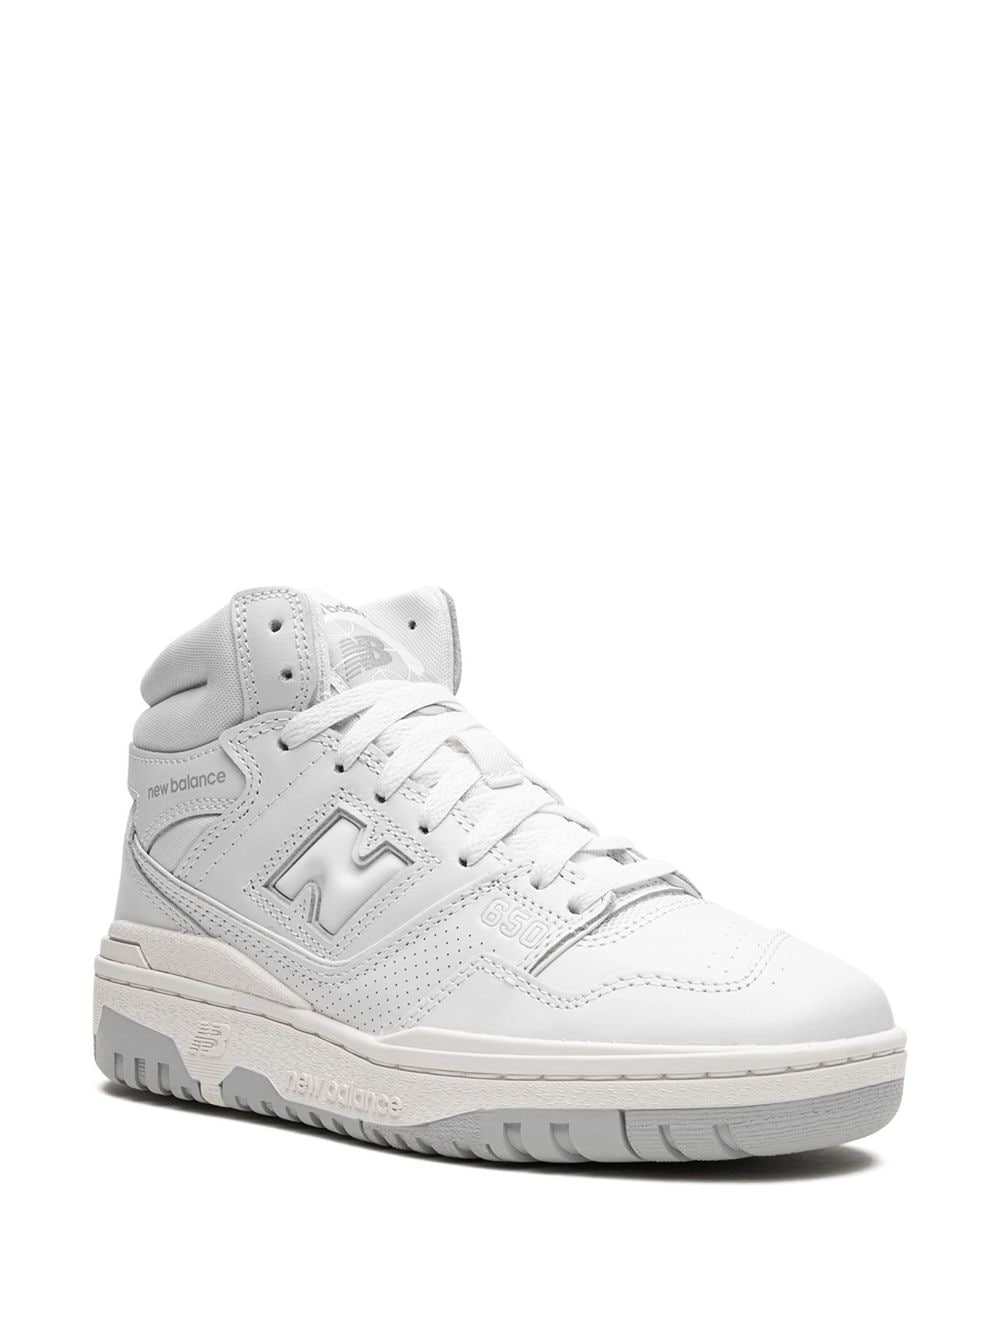 Shop New Balance 650 "triple White" Sneakers